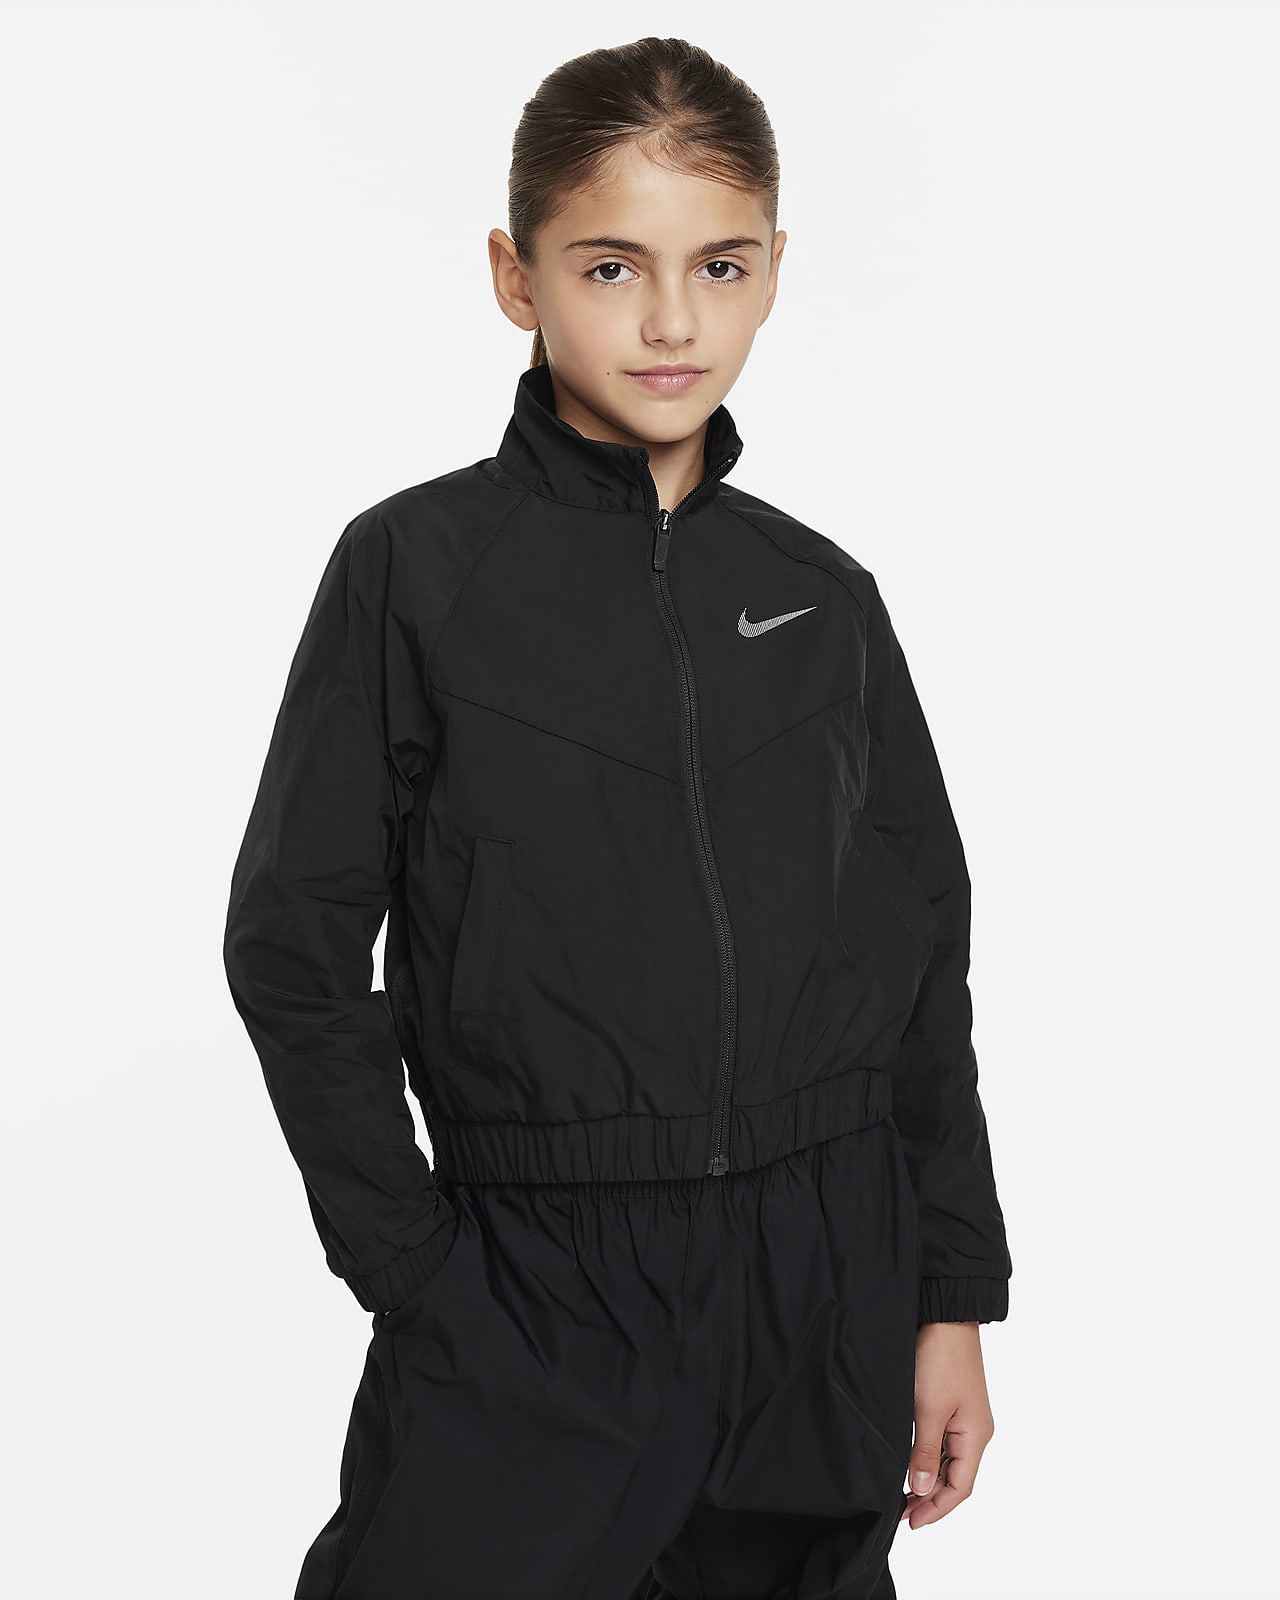 Nike Sportswear Windrunner weite Jacke für ältere Kinder (Mädchen)